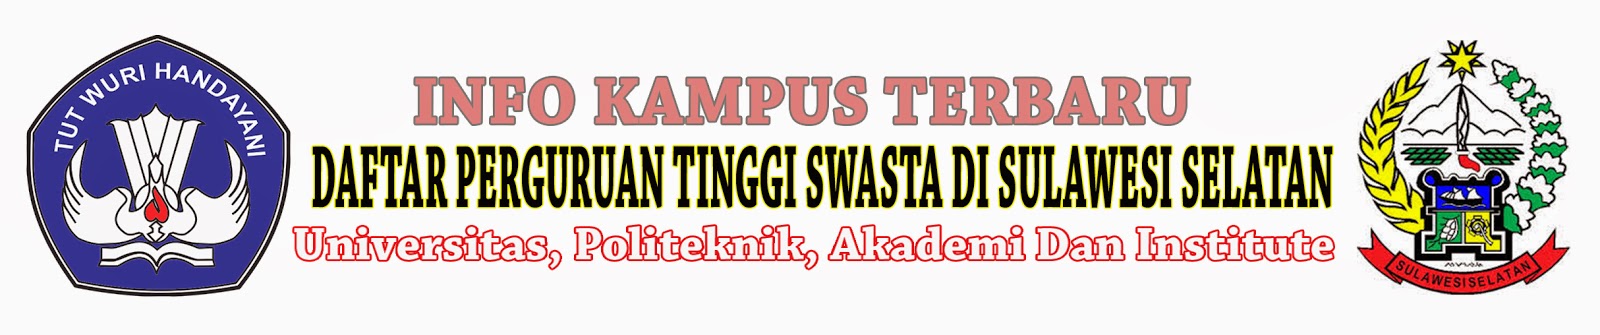 Daftar Perguruan Tinggi Swasta Di Sulawesi Selatan | Info Kampus Terbaru | Informasi Seputar ...